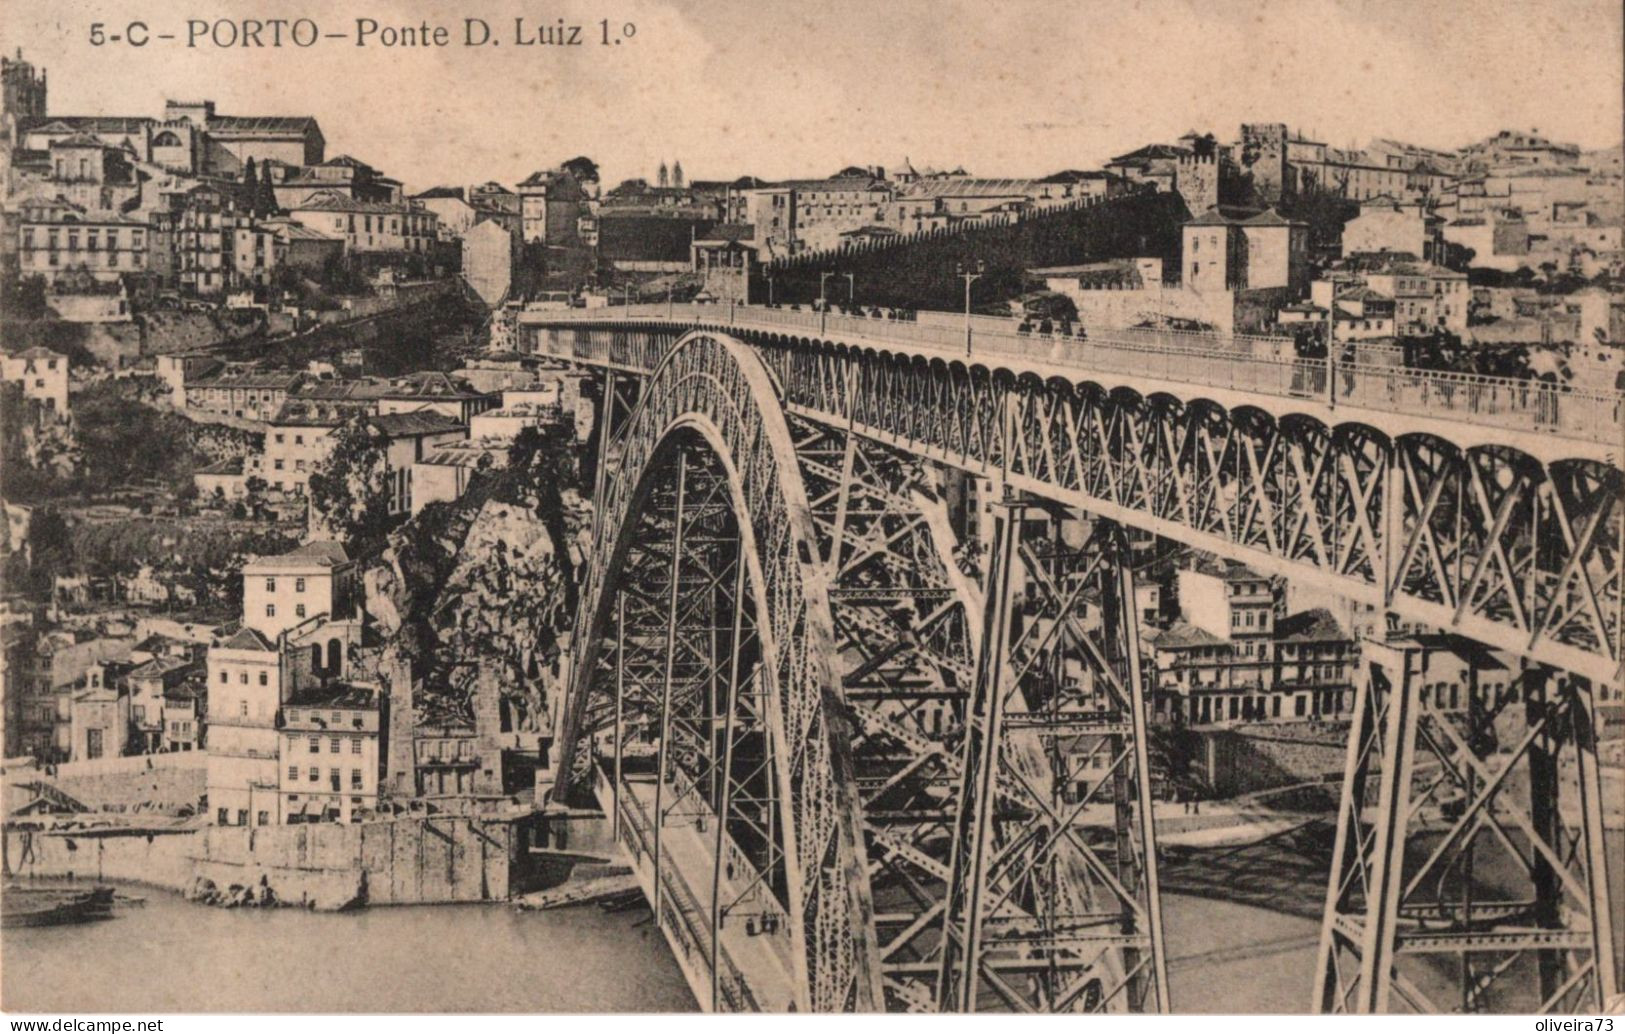 PORTO - Ponte D. Luiz Iº (Ed. Alberto Ferreira - Nº 5-C) PORTUGAL - Porto